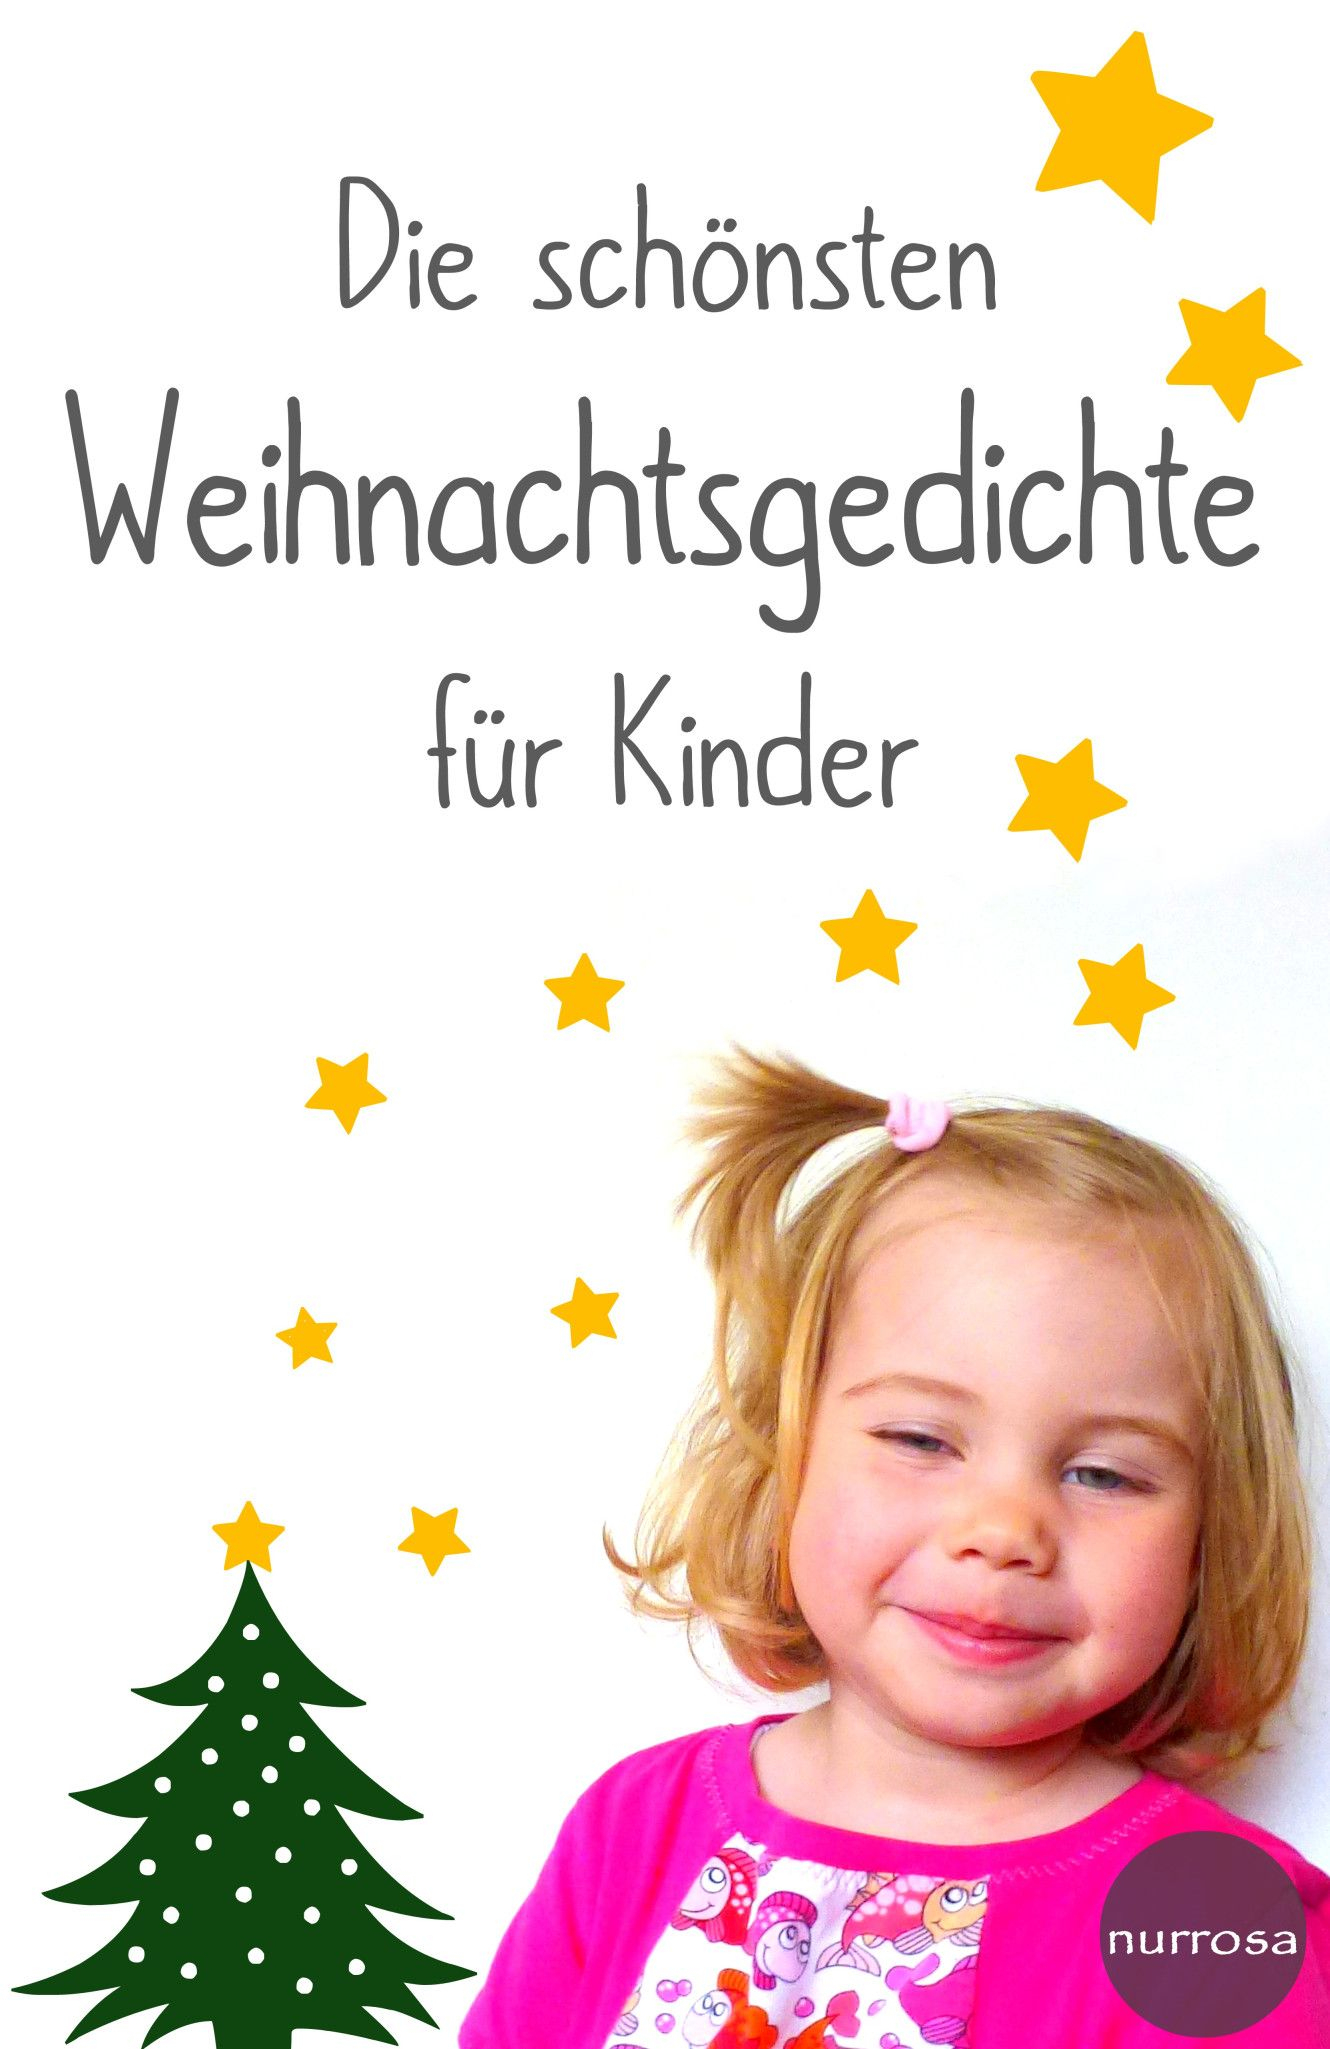 Die Schönsten Weihnachtsgedichte Für Kinder (Mit Bildern ganzes Kurzes Weihnachtsgedicht Für Kindergartenkinder